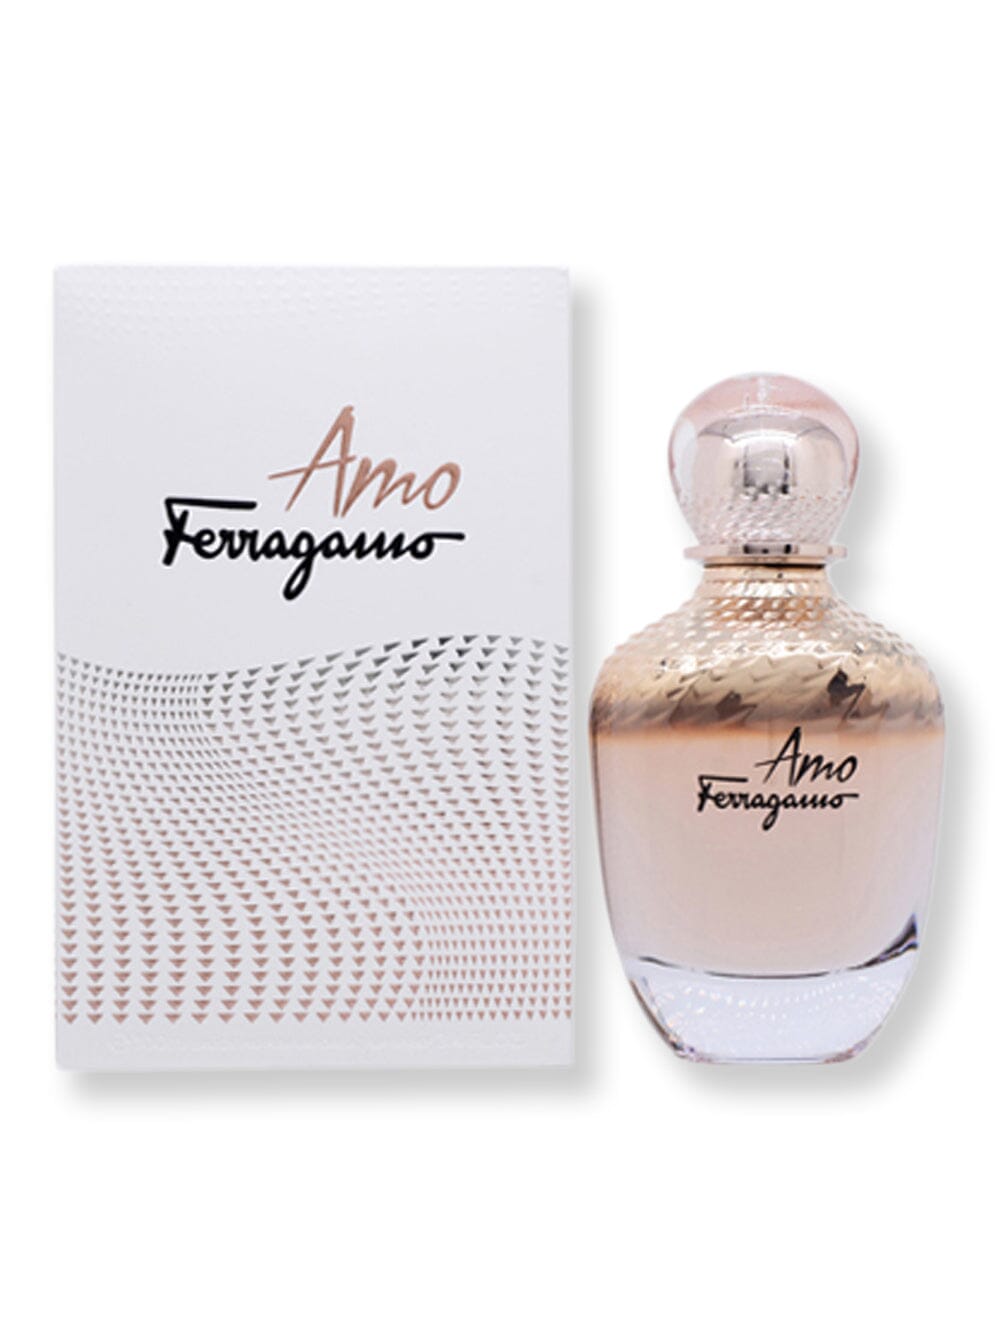 Salvatore Ferragamo Salvatore Ferragamo Amo Ferragamo EDP Spray 3.4 oz100 ml Perfume 